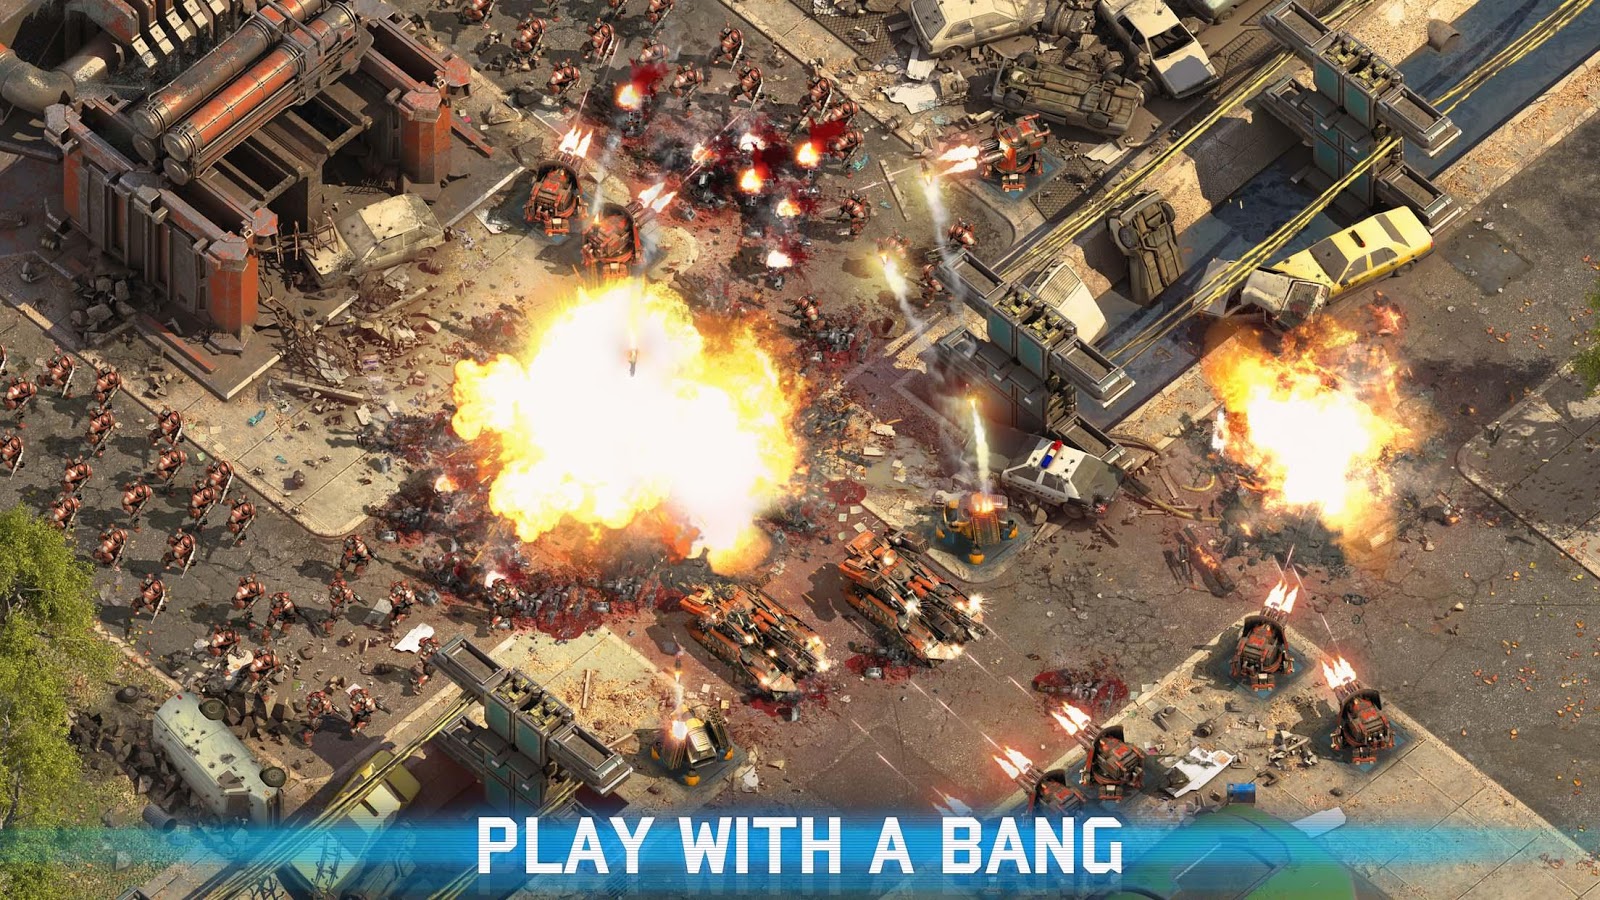 Download Epic War TD 2 v1.02 Full Game Apk ~ Download Free Apk